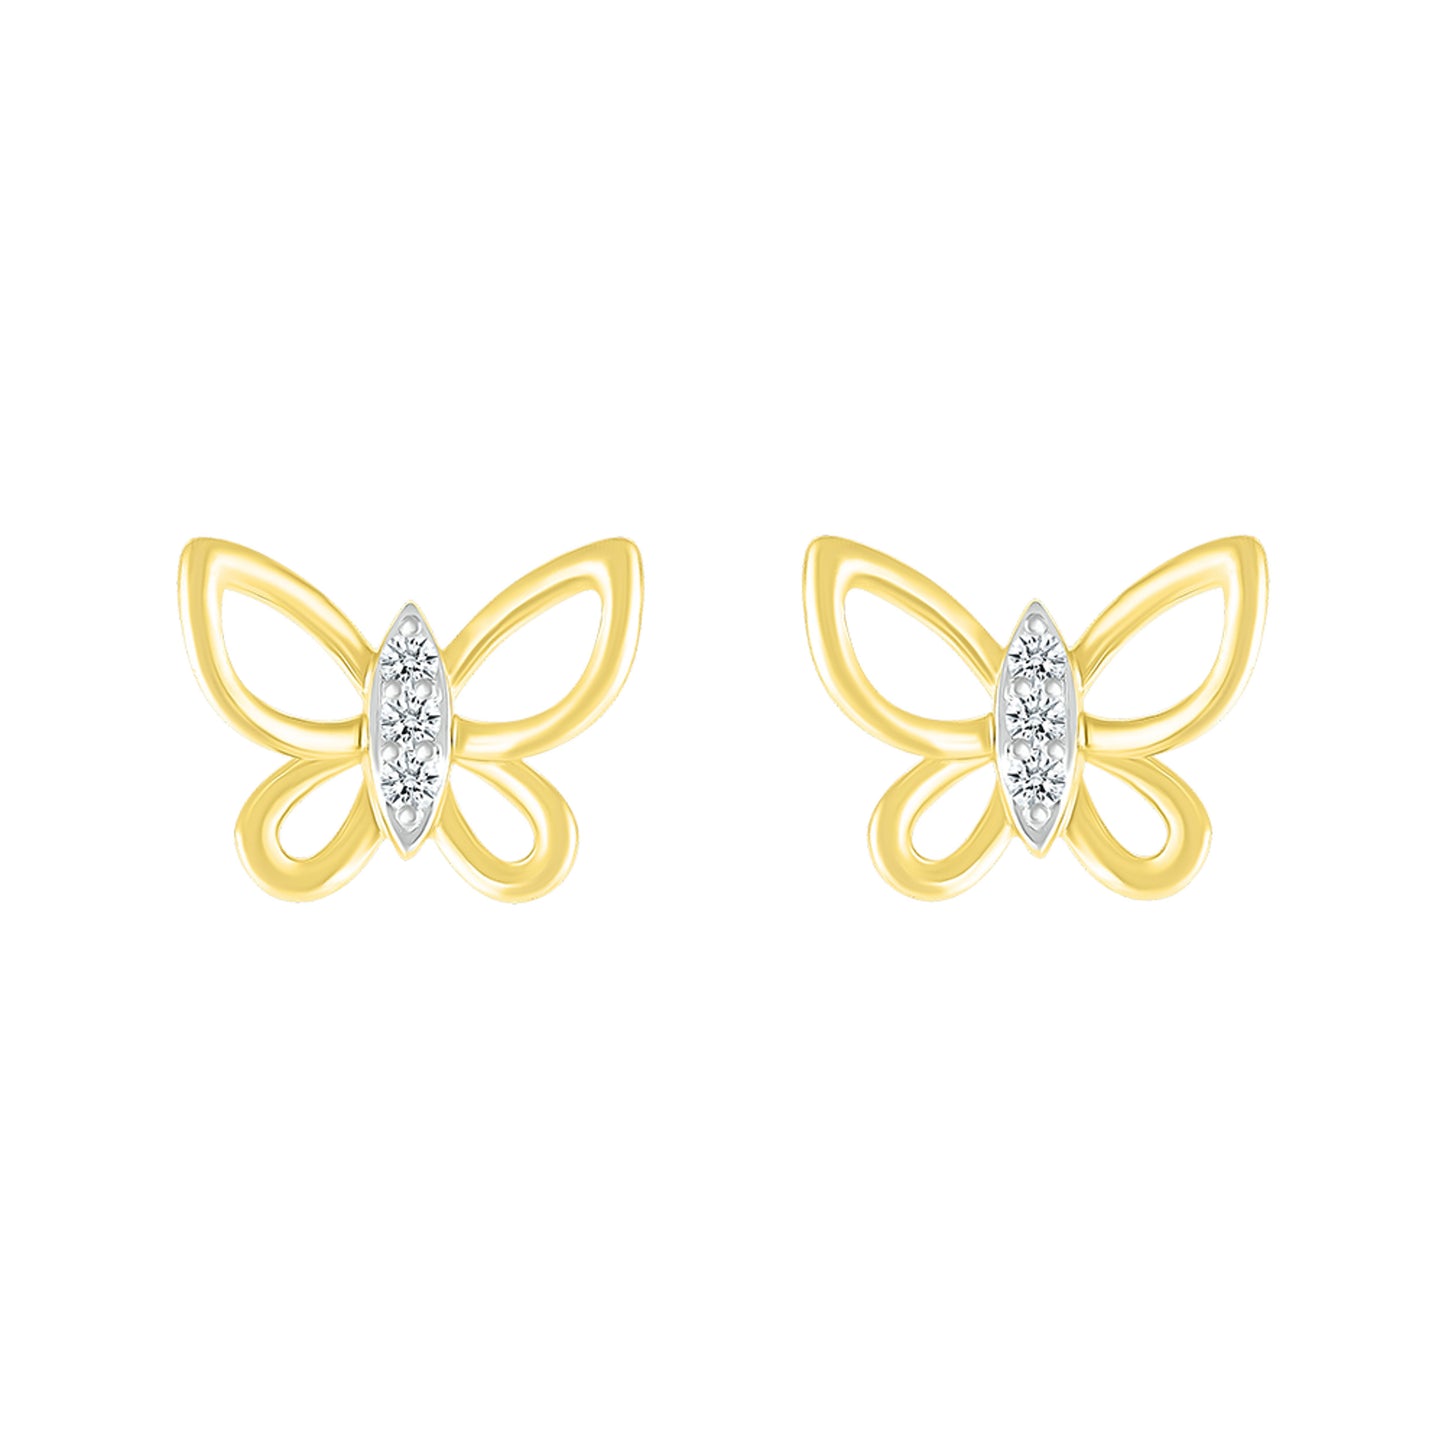 10k Yellow Gold 0.05 CTW Diamond Butterfly Earrings